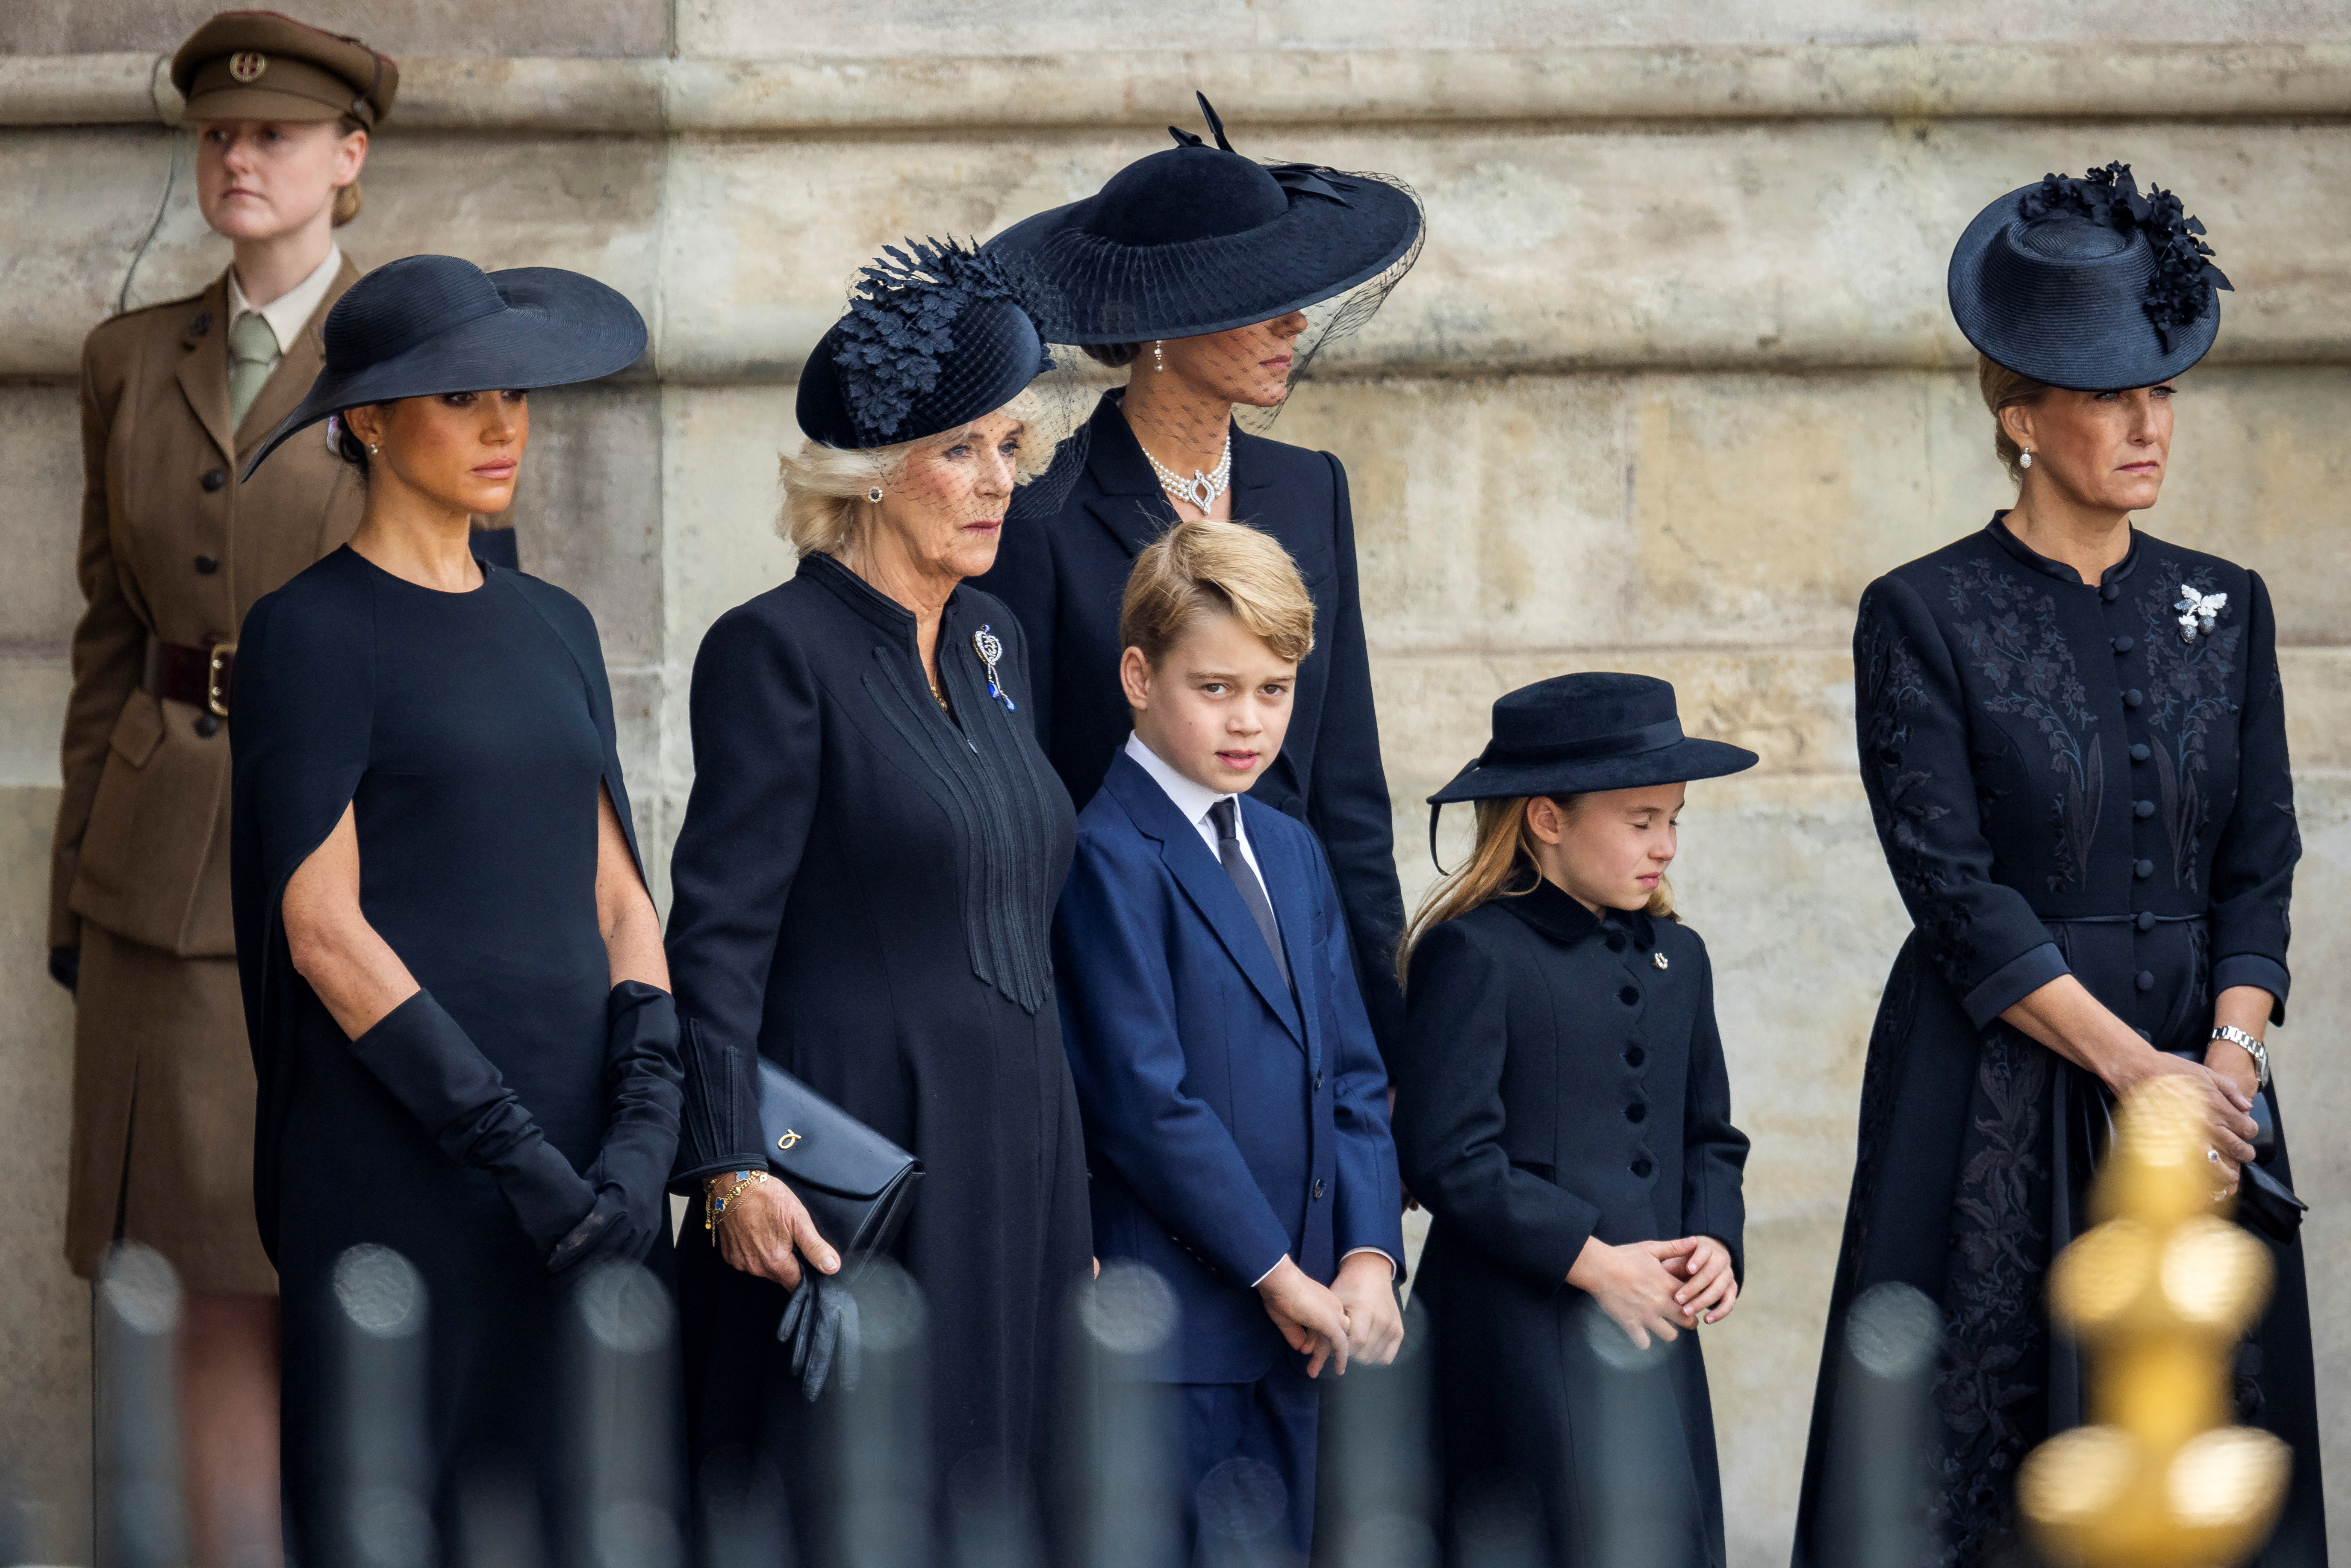 La reina Camila, la princesa de Gales, Meghan Markle, el príncipe George, la princesa Charlotte y Sofía, condesa de Wessex, se paran afuera de la Abadía de Westminster el día del funeral de estado y entierro de la reina Isabel II (Reuters)